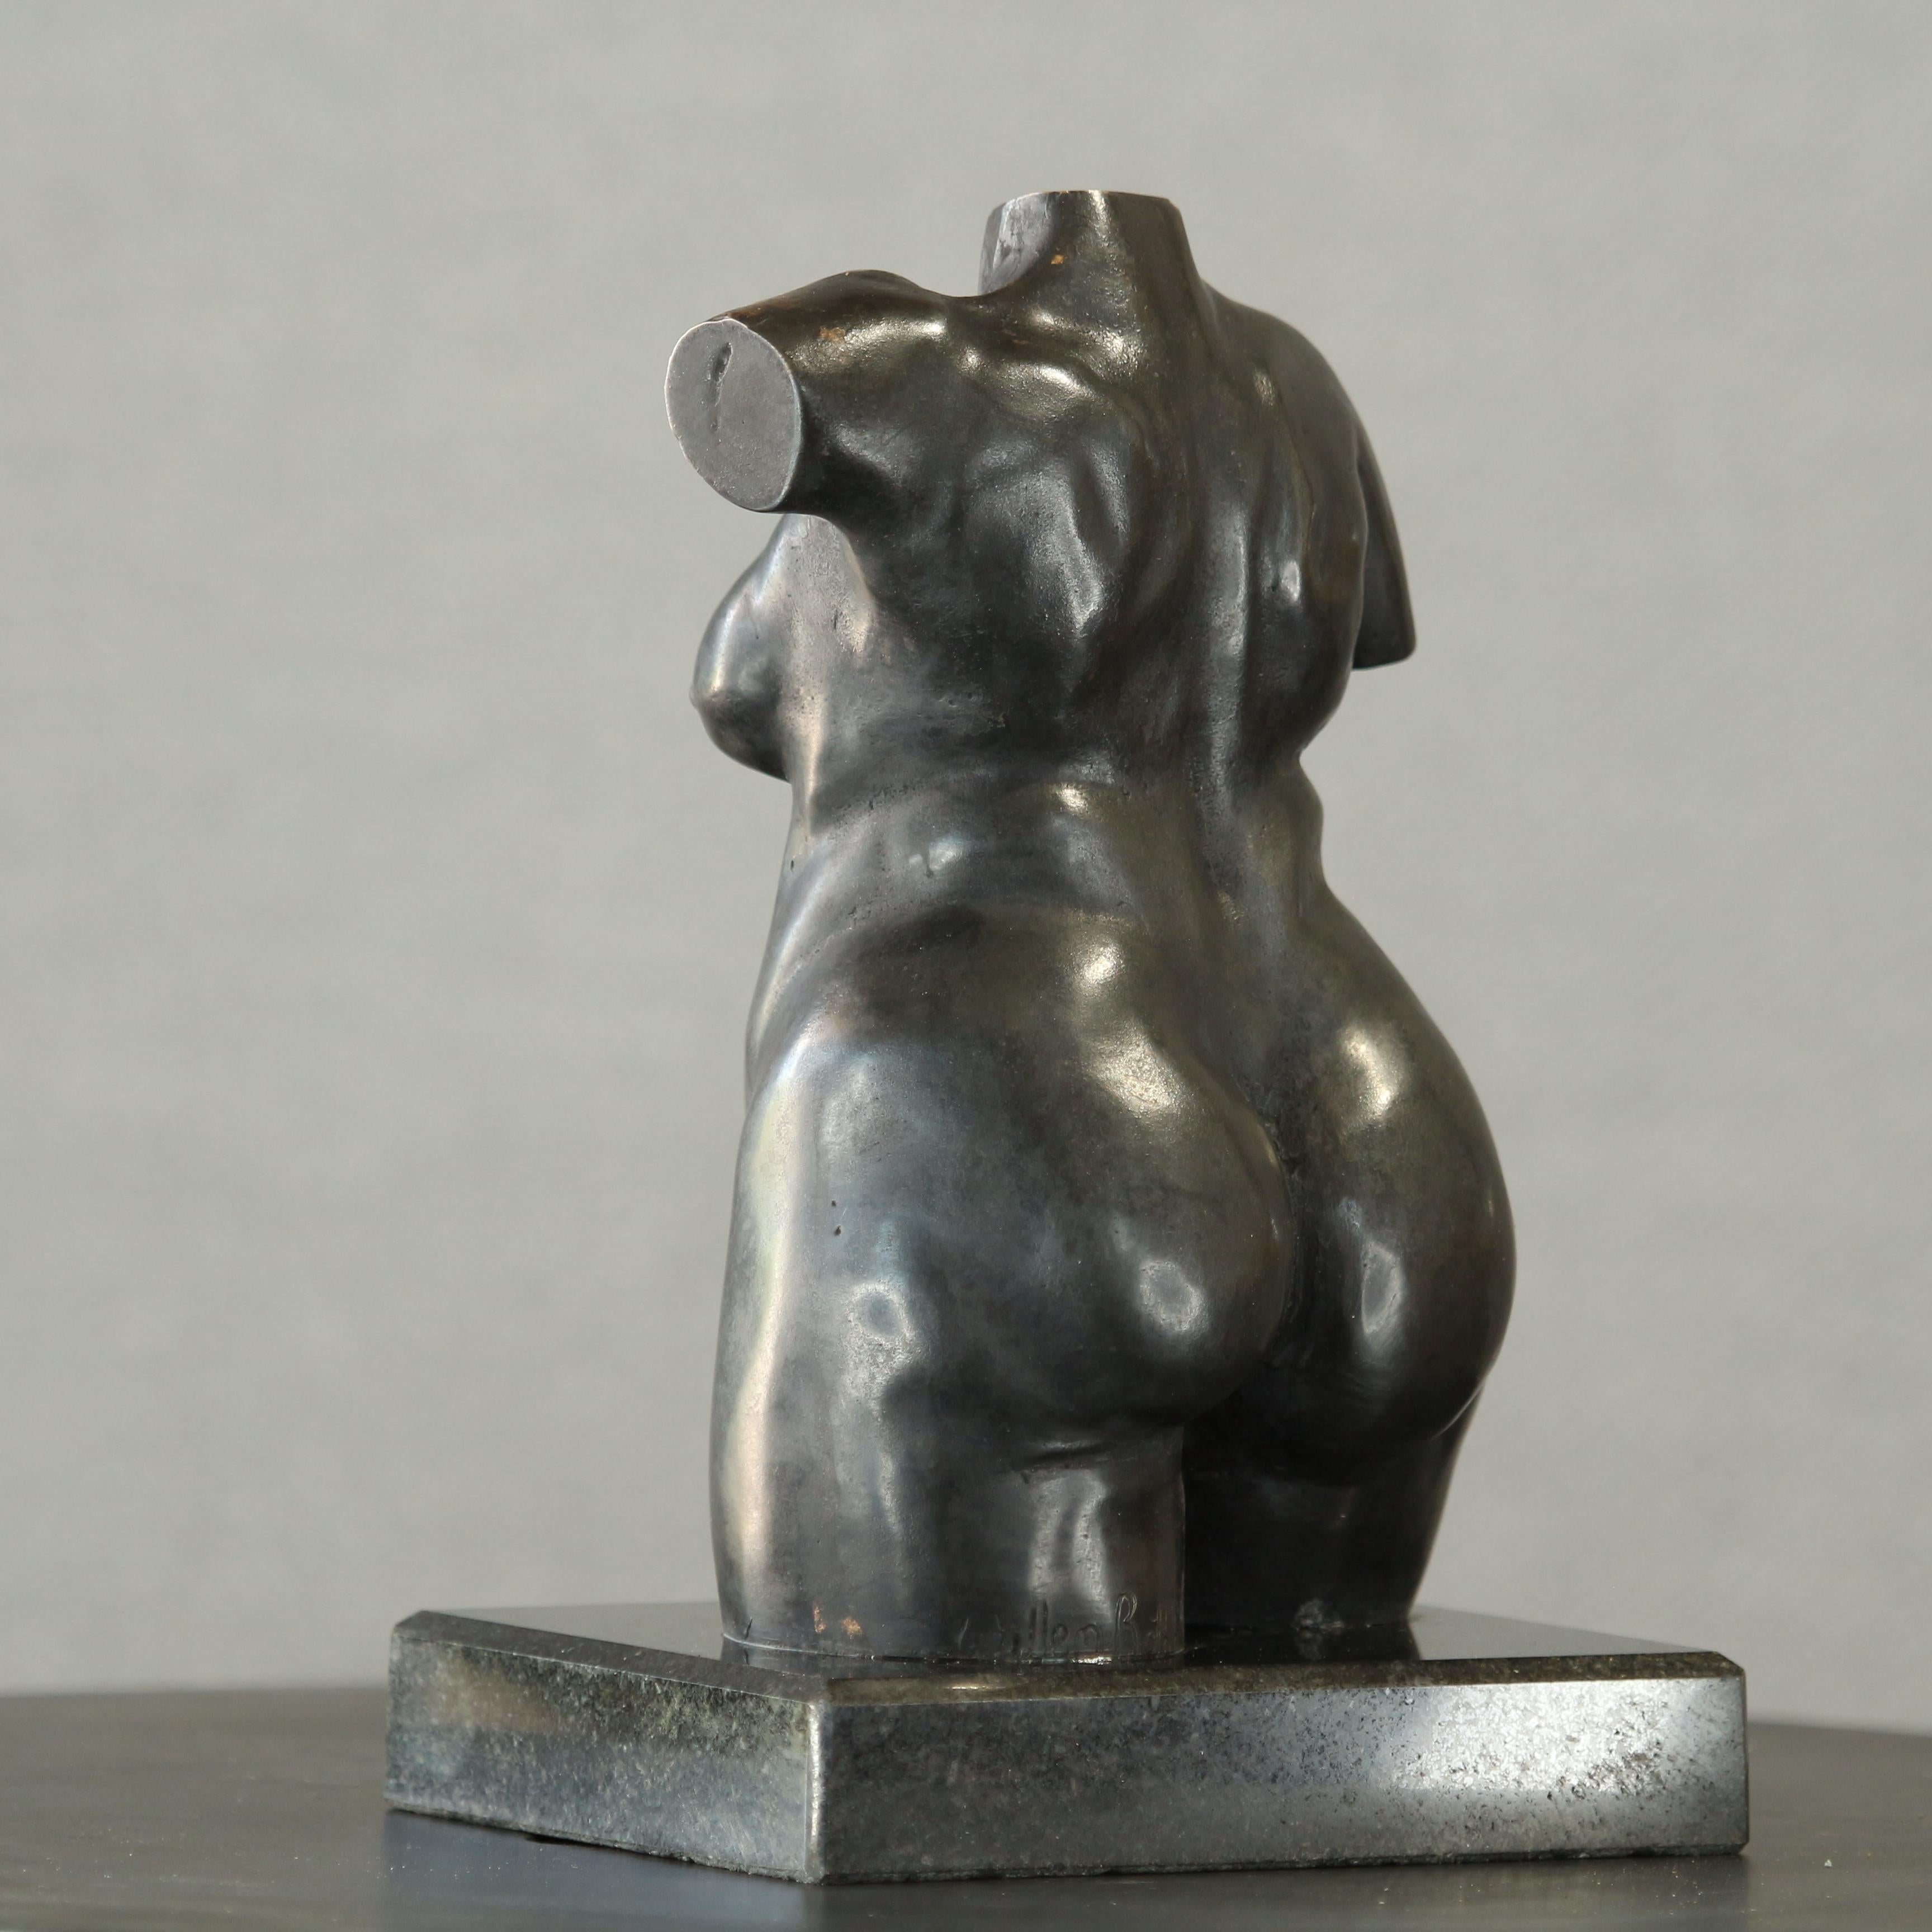 Torse de femme féminine - Petite sculpture figurative de femme en bronze patiné brun foncé - Or Figurative Sculpture par Willem Botha 